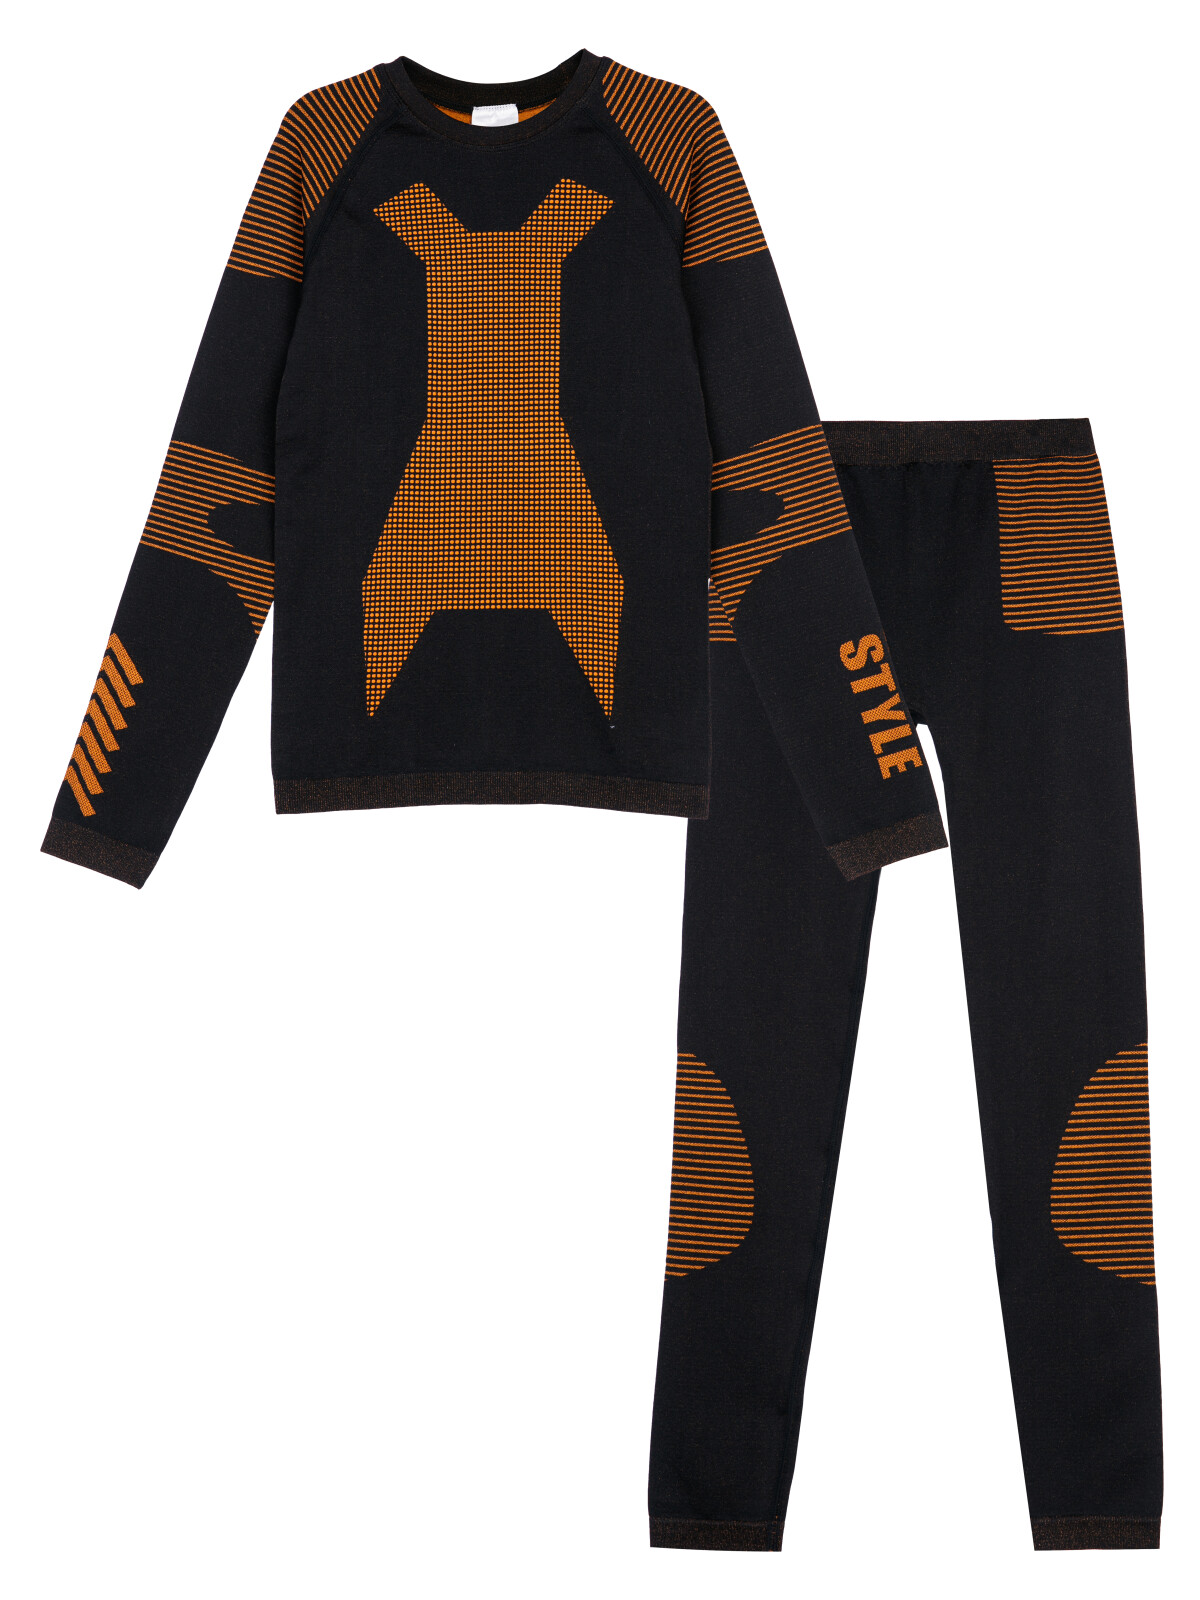 Термокомплект для мальчиков PlayToday: брюки, толстовка, черный,оранжевый, 164-170